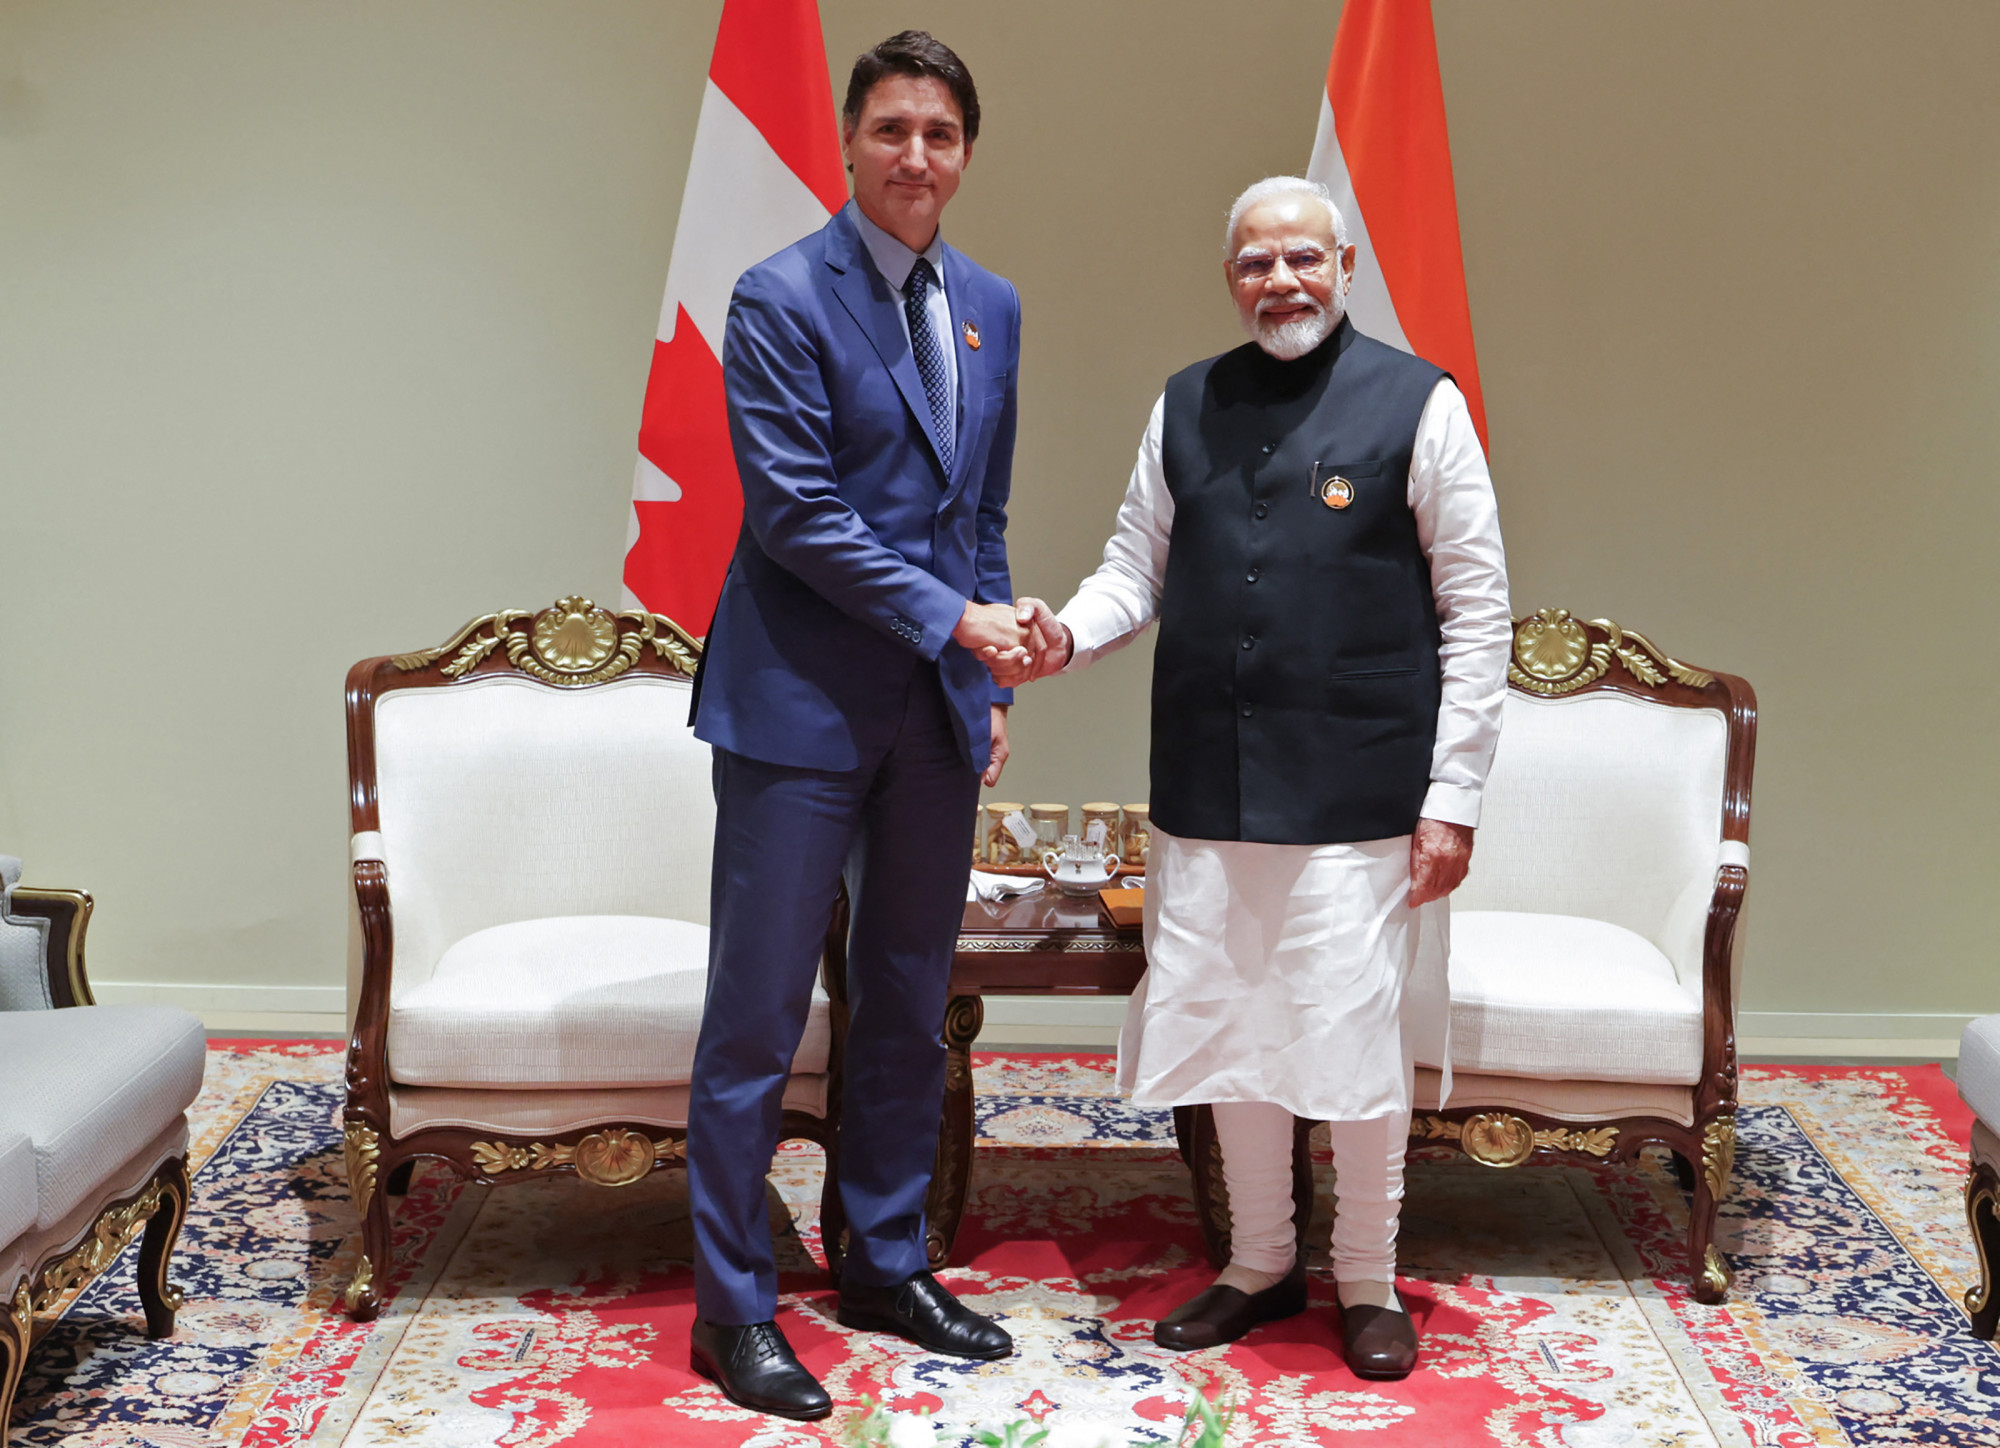 India-ellenes hangulat miatt inti óvatosságra Kanadában tartózkodó állampolgárait India